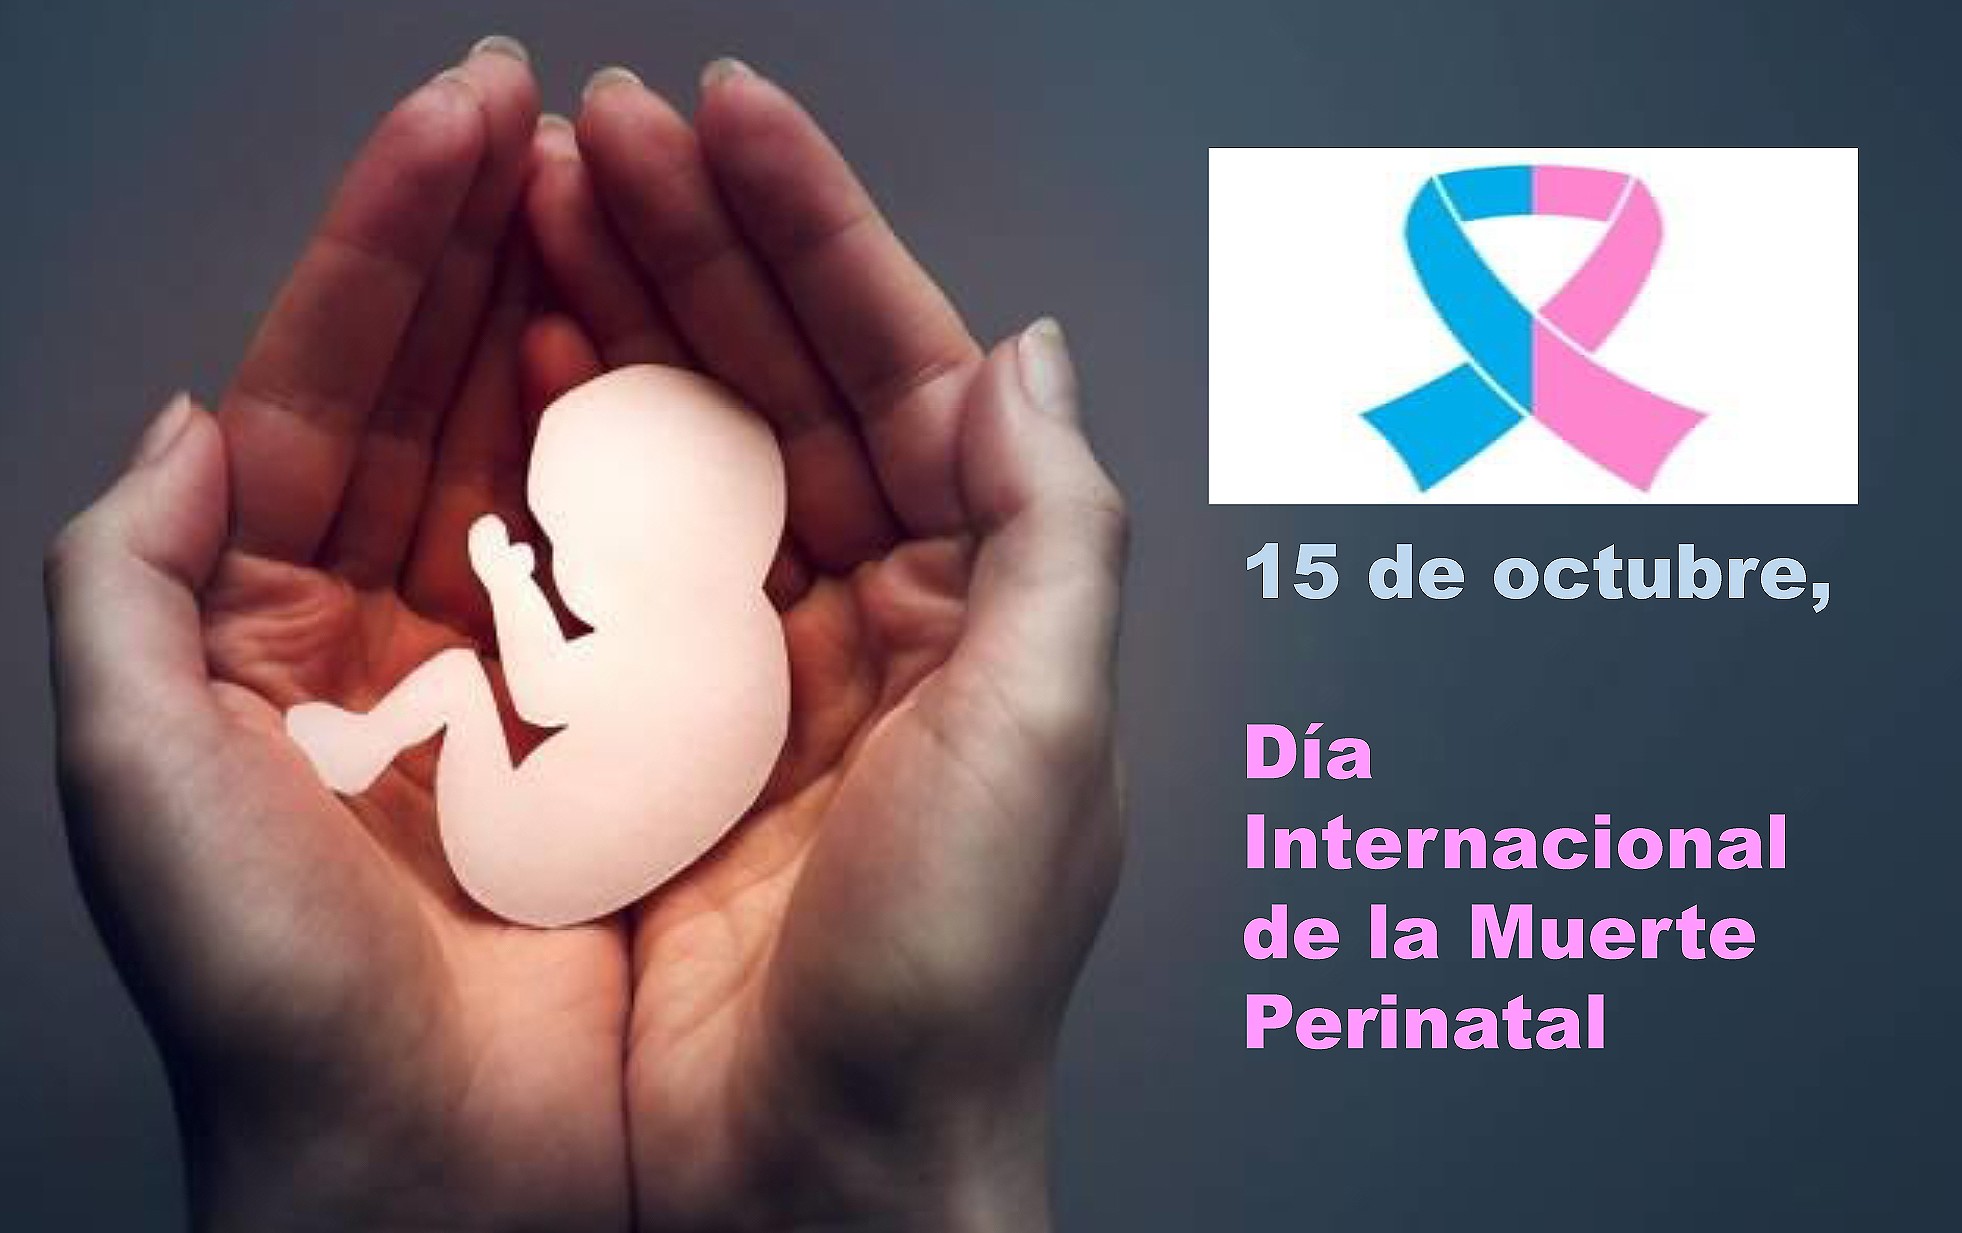 El Ayuntamiento de Valdemorillo se iluminará en rosa y azul este domingo, Día Internacional de la Muerte Perinatal